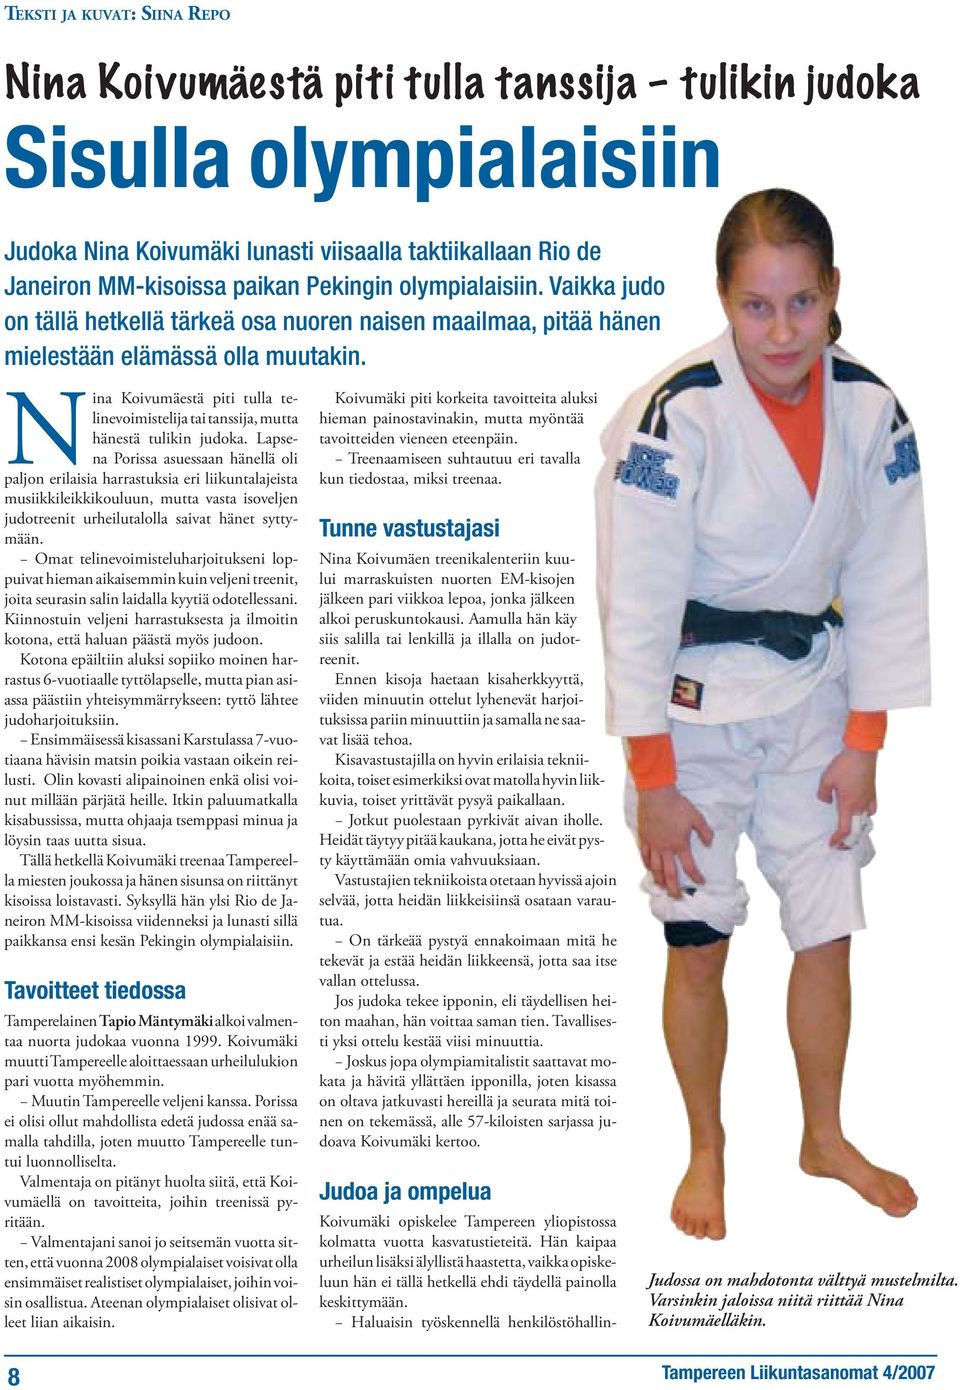 Nina Koivumäestä piti tulla telinevoimistelija tai tanssija, mutta hänestä tulikin judoka.